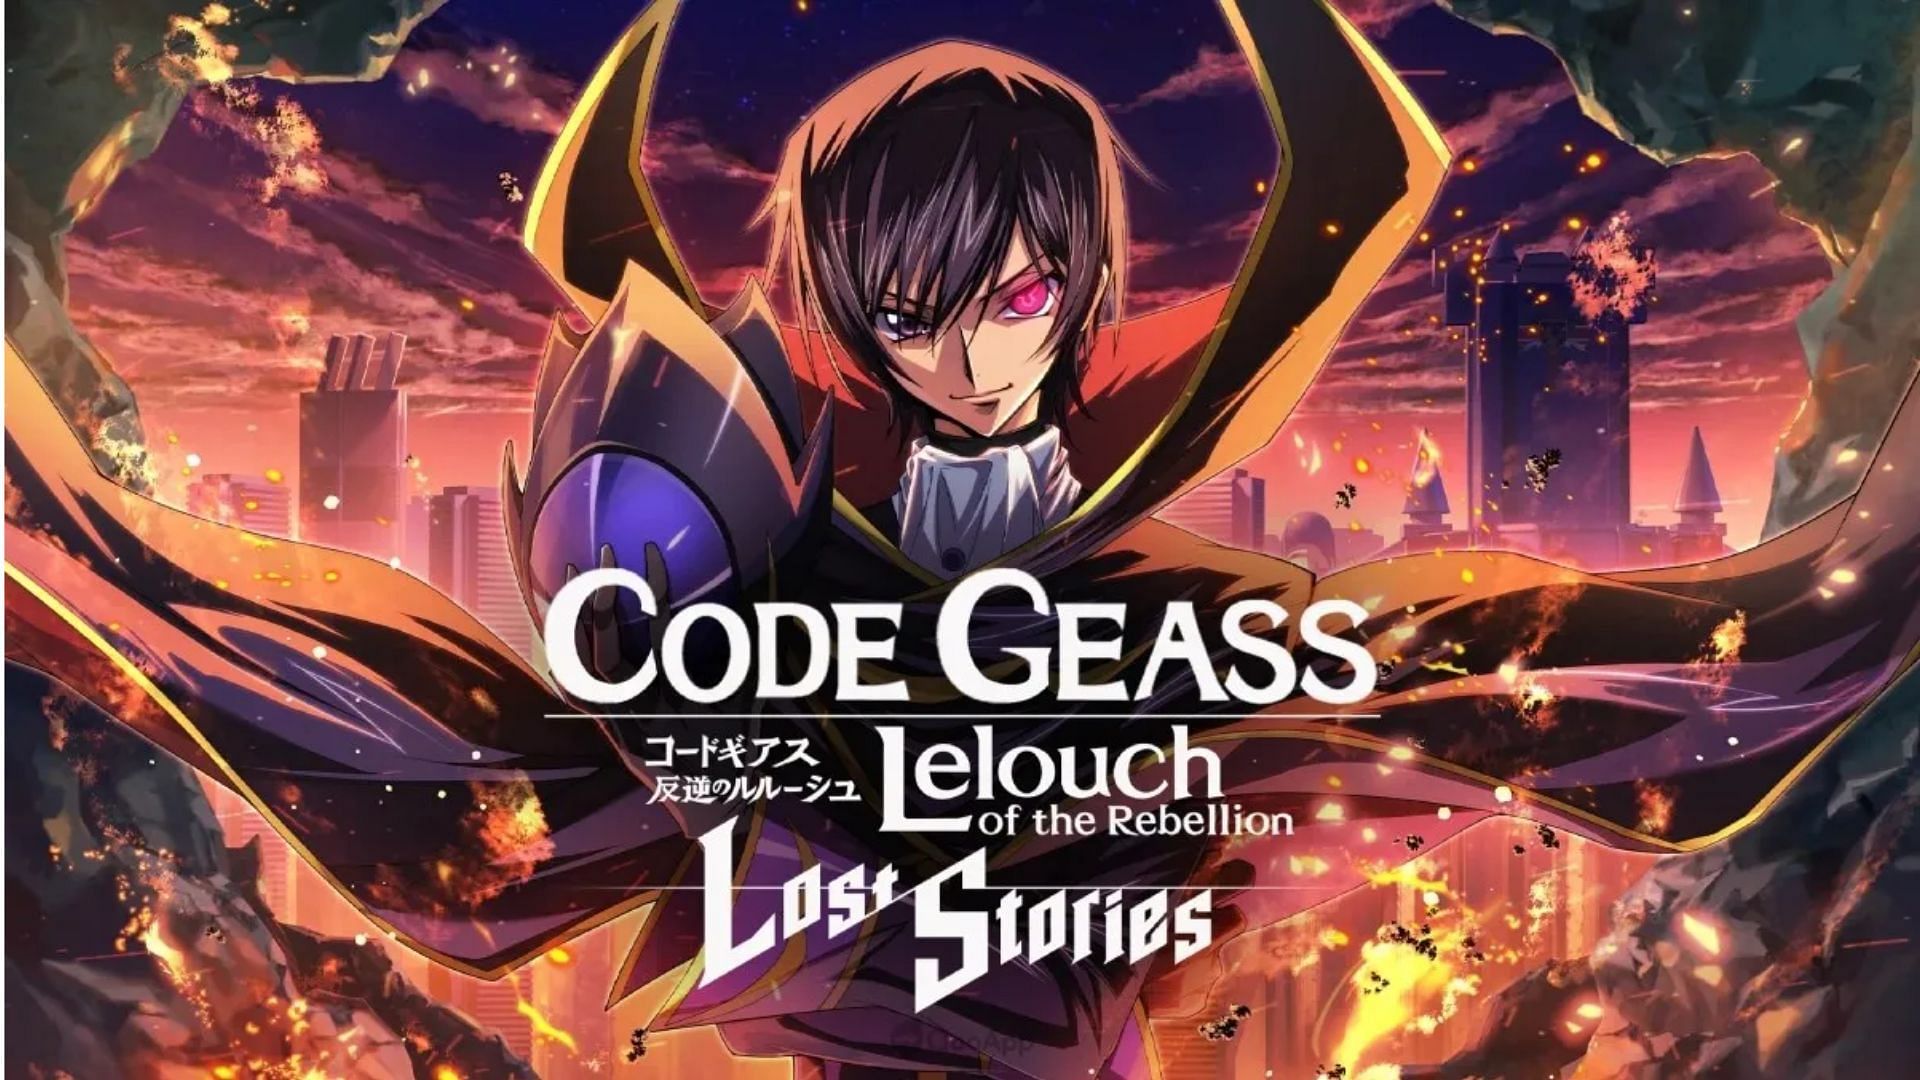 Protagonist (Lost Stories), Code Geass Wiki